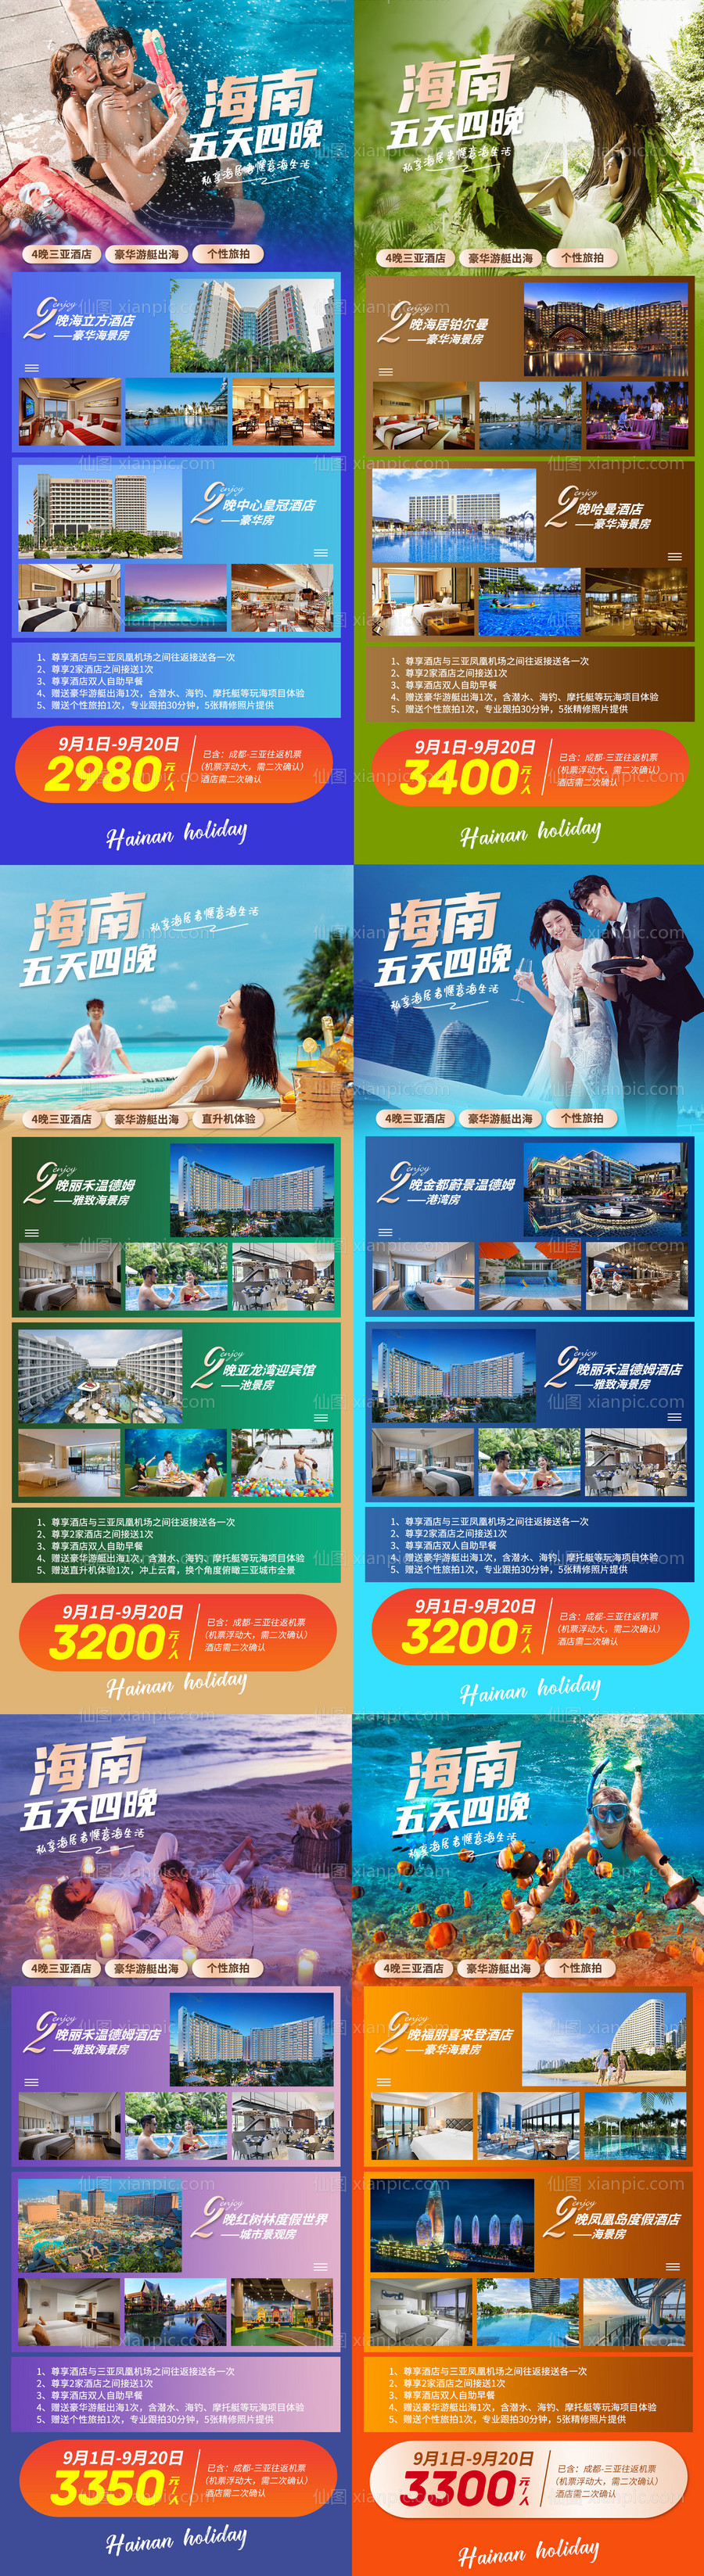 素材乐-海南酒店度假配套价值点介绍海报 